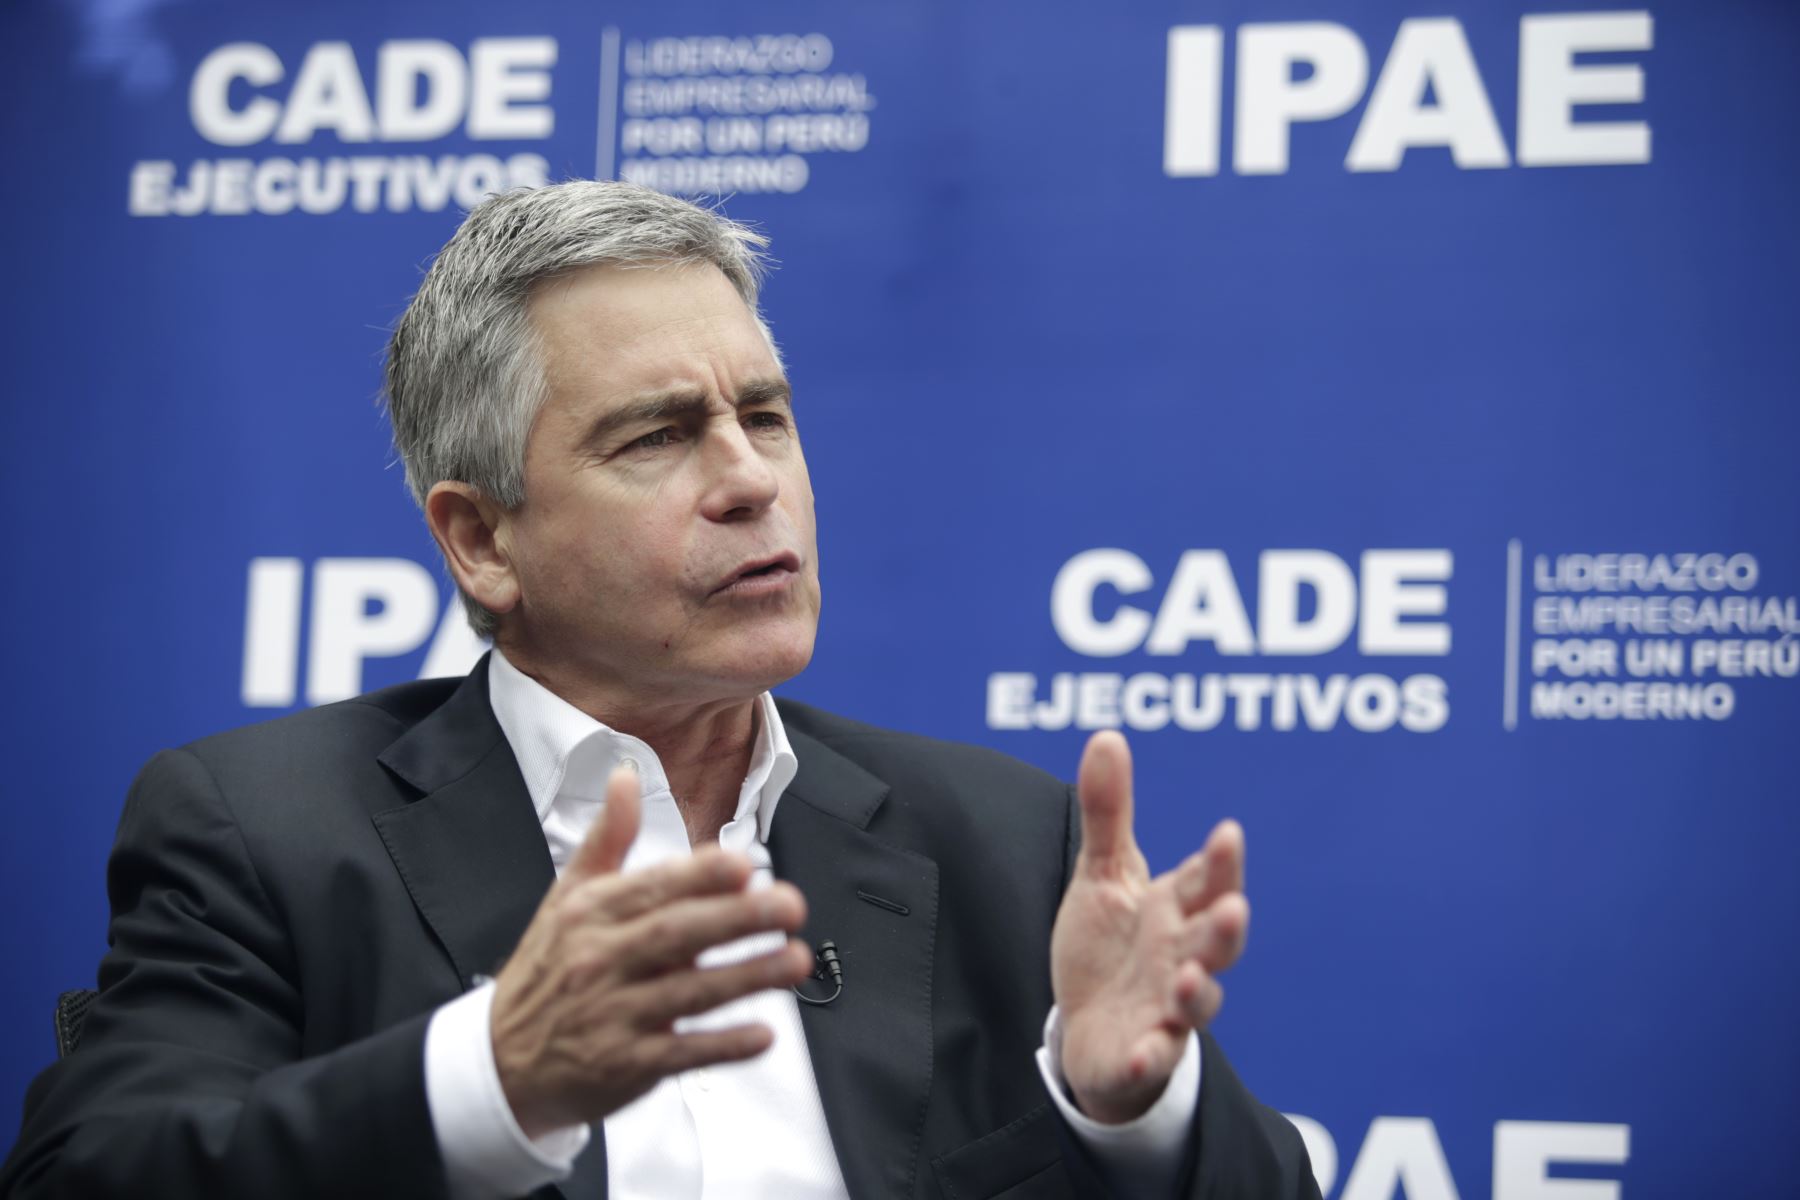 Presidente de CADE Ejecutivos 2018, Gonzalo Aguirre. ANDINA/Melina Mejía